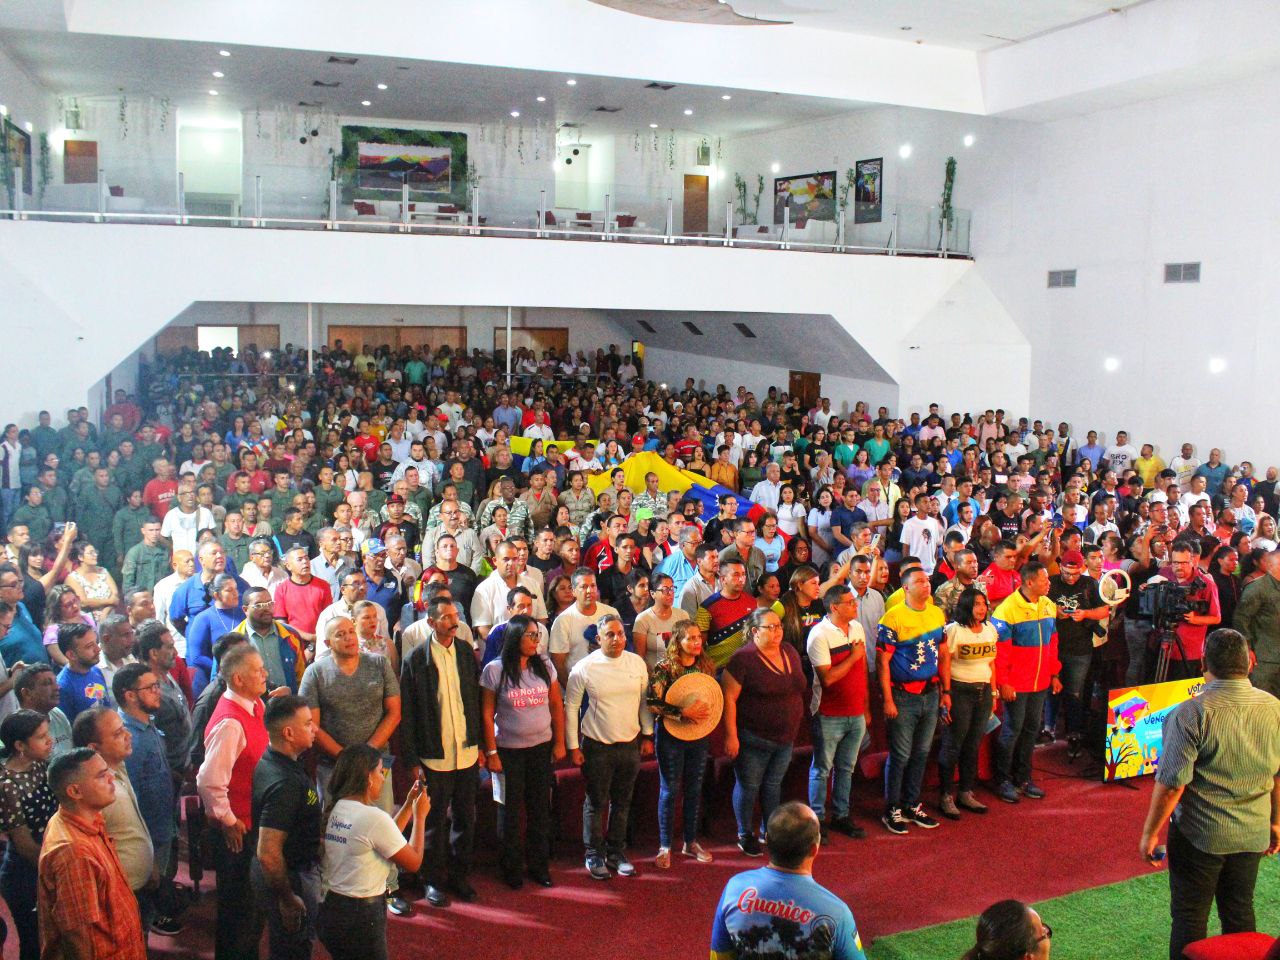 Campaña “Venezuela Toda” por el Esequibo: Orgullo nacional